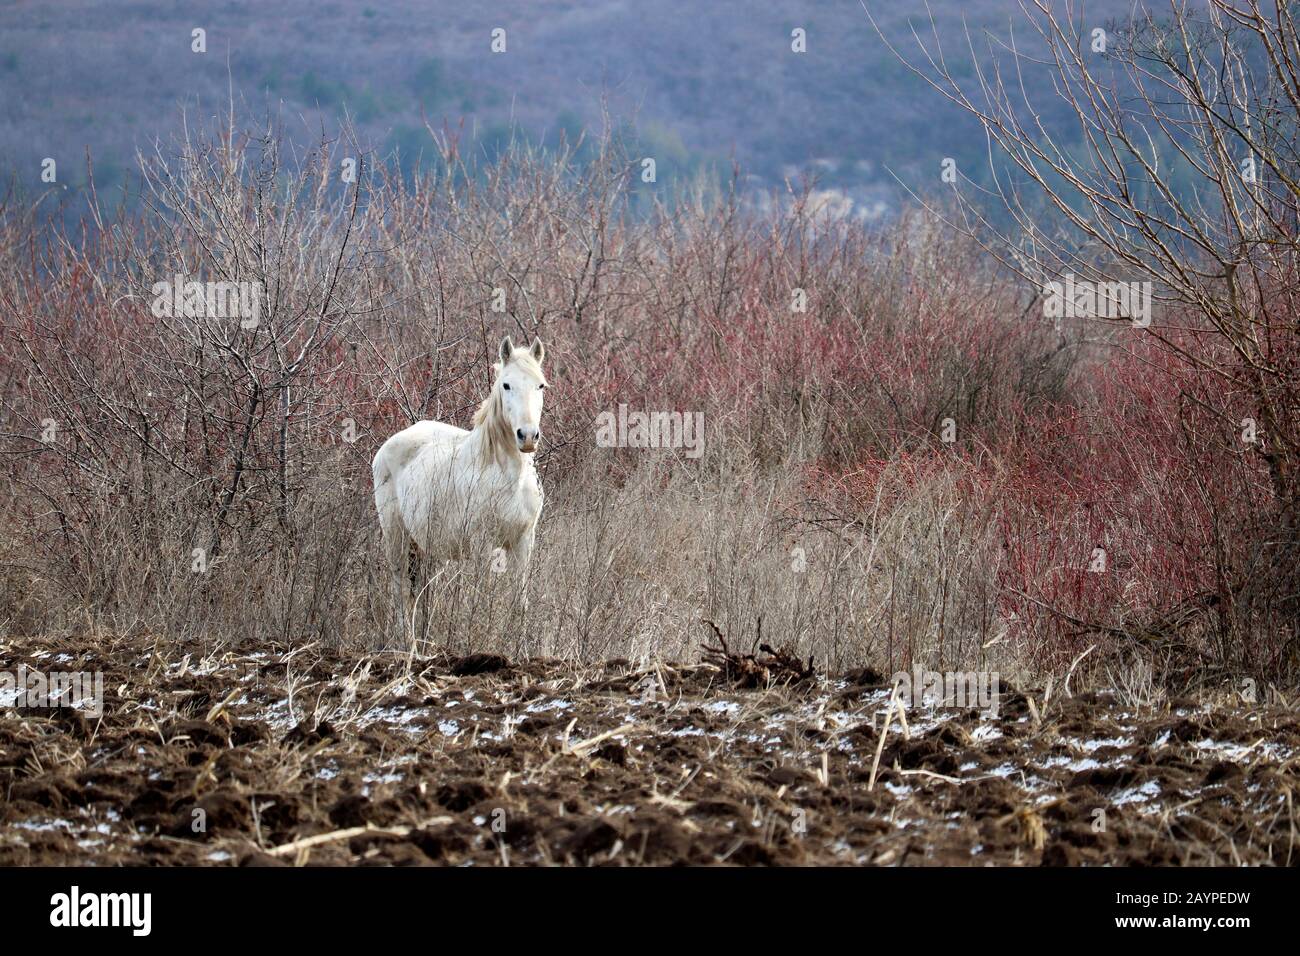 Caballo blanco pastando en el campo arado sobre el fondo del bosque de montaña. Pintoresco paisaje rural a principios de primavera Foto de stock